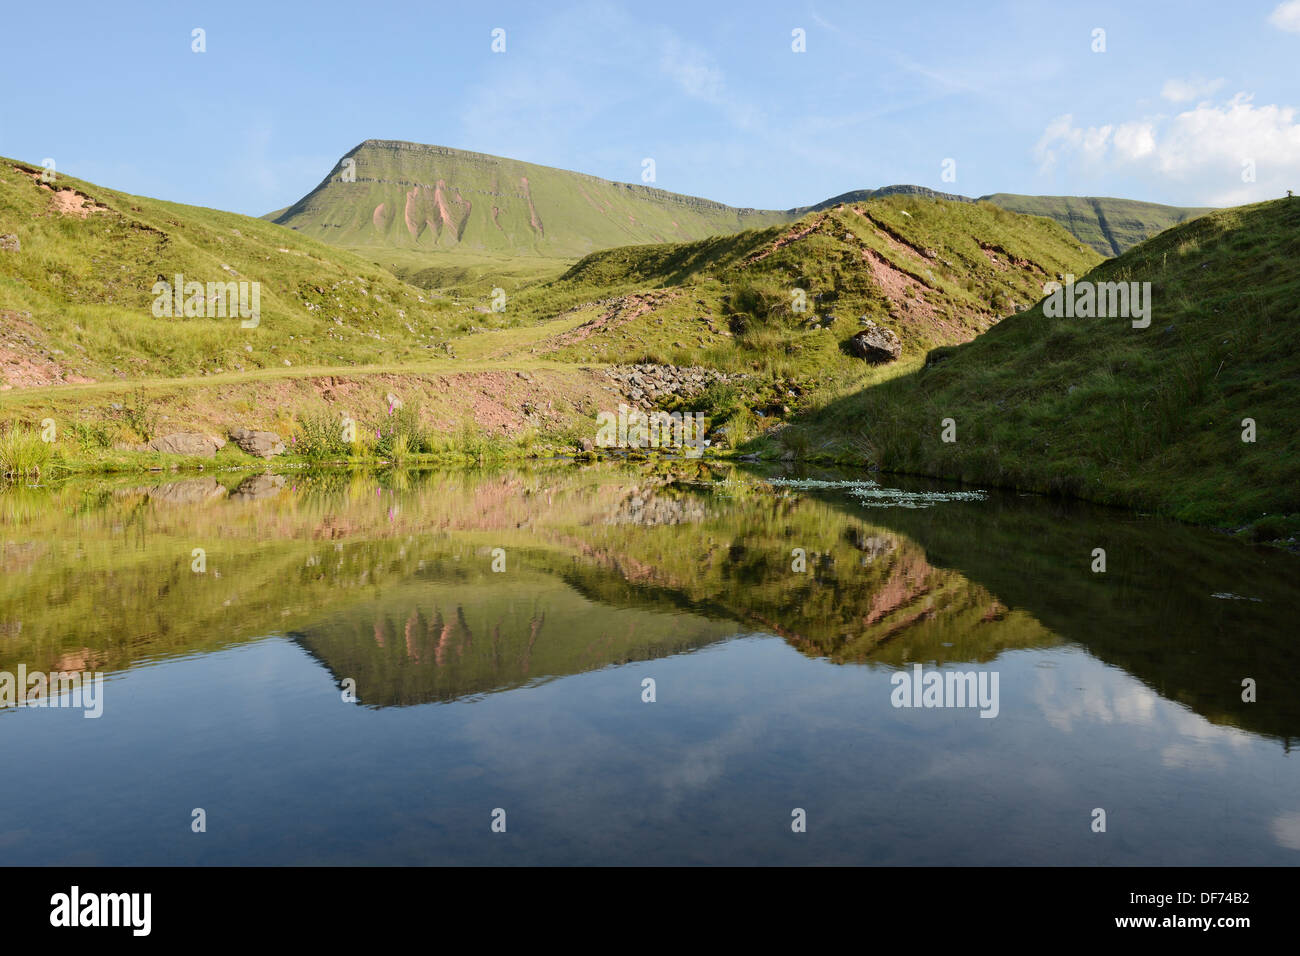 Picws Du, der höchste Punkt in Carmarthen Fans, spiegelt sich in einem kleinen Teich. Brecon Beacons, Wales, UK. Stockfoto